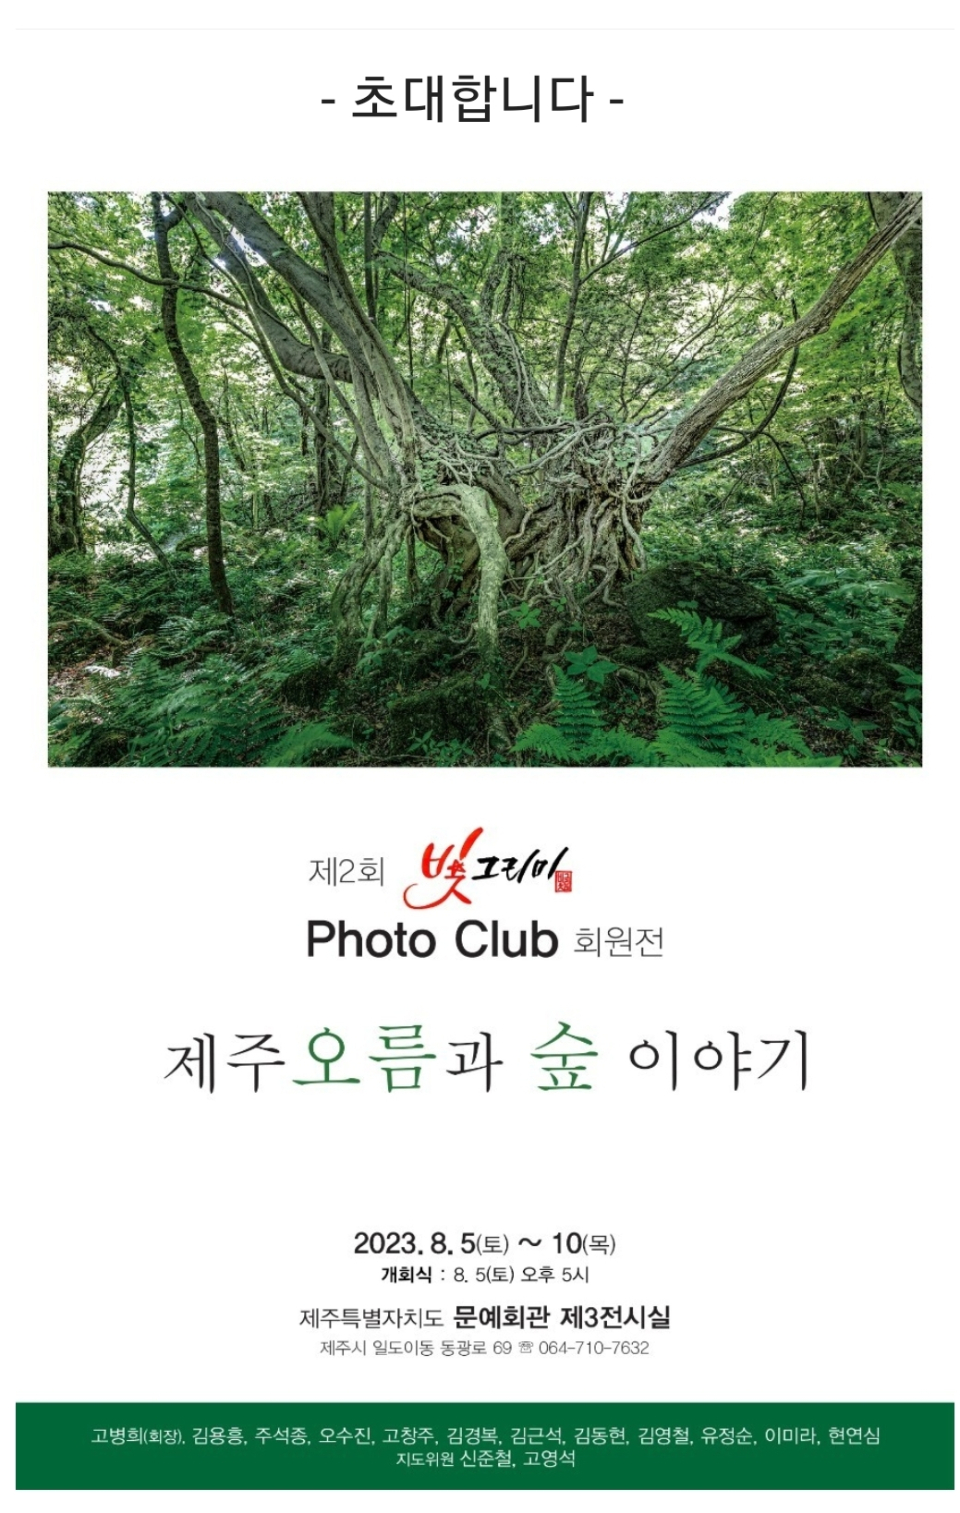 [전시]“제주오름과 숲 이야기” ...빛그리미 Photo Club, 제2회 회원전 개최